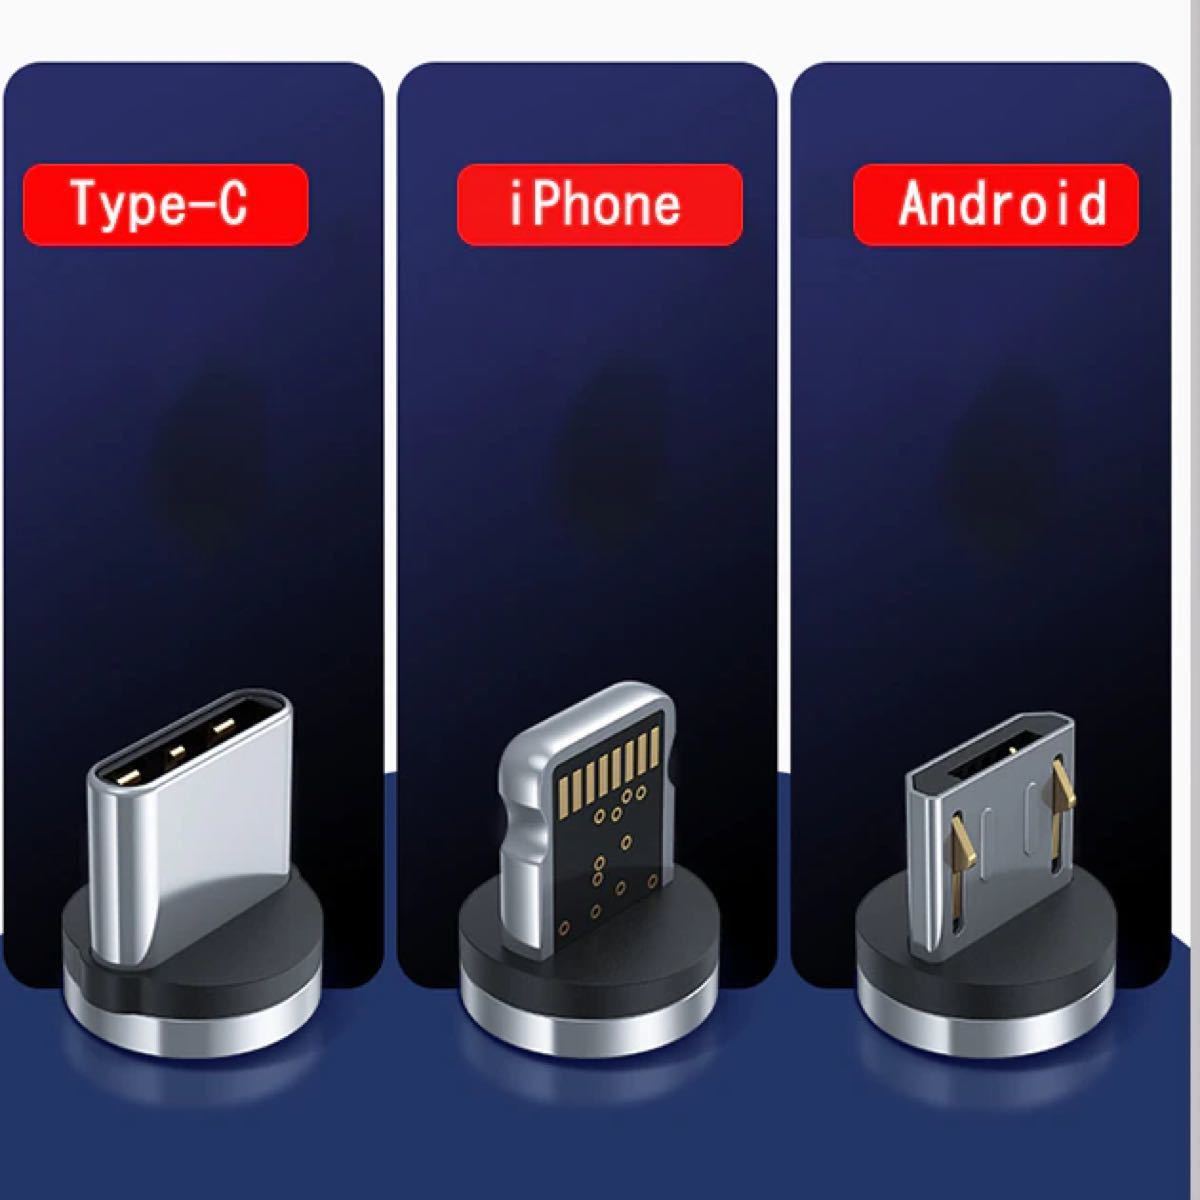 マグネット充電ケーブル 1M*3本+端子6個（iPhone*2+Android*2+TYPE-C*2）急速充電磁石式 ケーブル